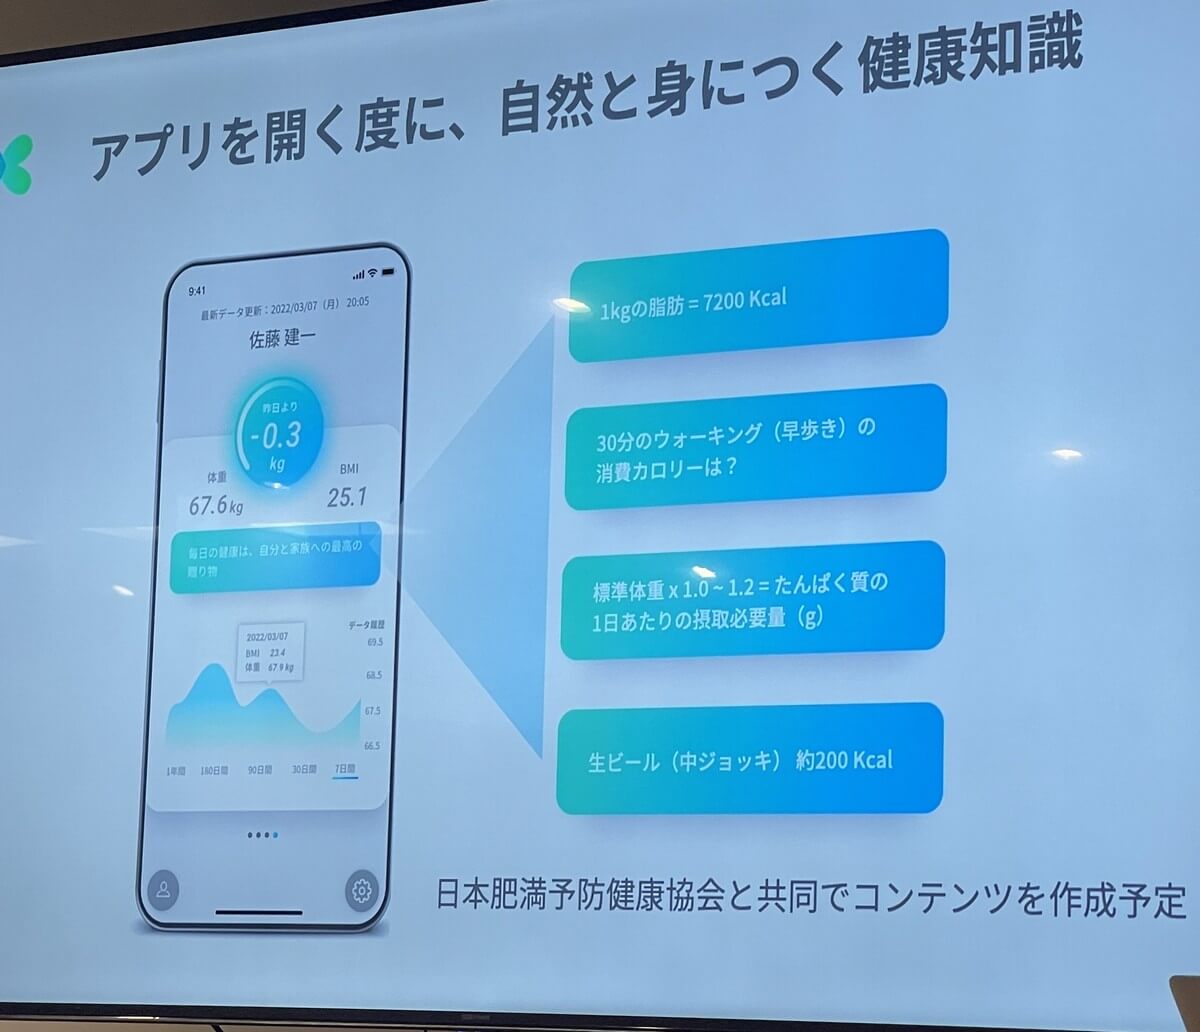 アプリを開いた時には、単に体重やBMI数値を確認するだけでなく、日本肥満予防健康協会と共同で作成した健康知識が表示されるとのこと